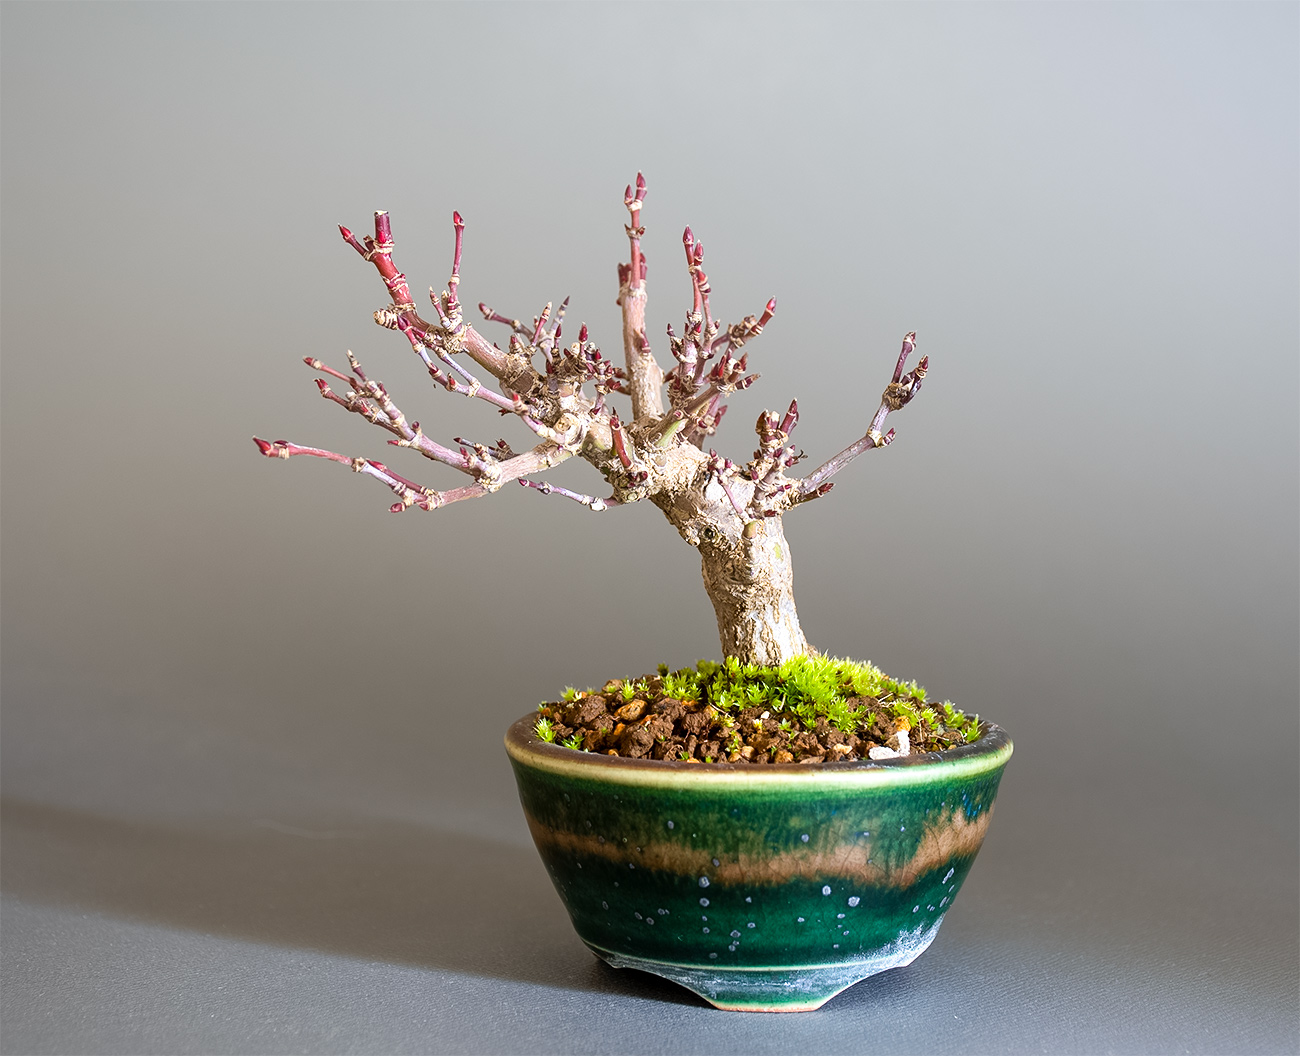 イロハモミジ-T1（いろはもみじ・いろは紅葉）雑木盆栽の販売と育て方・作り方・Acer palmatum bonsai